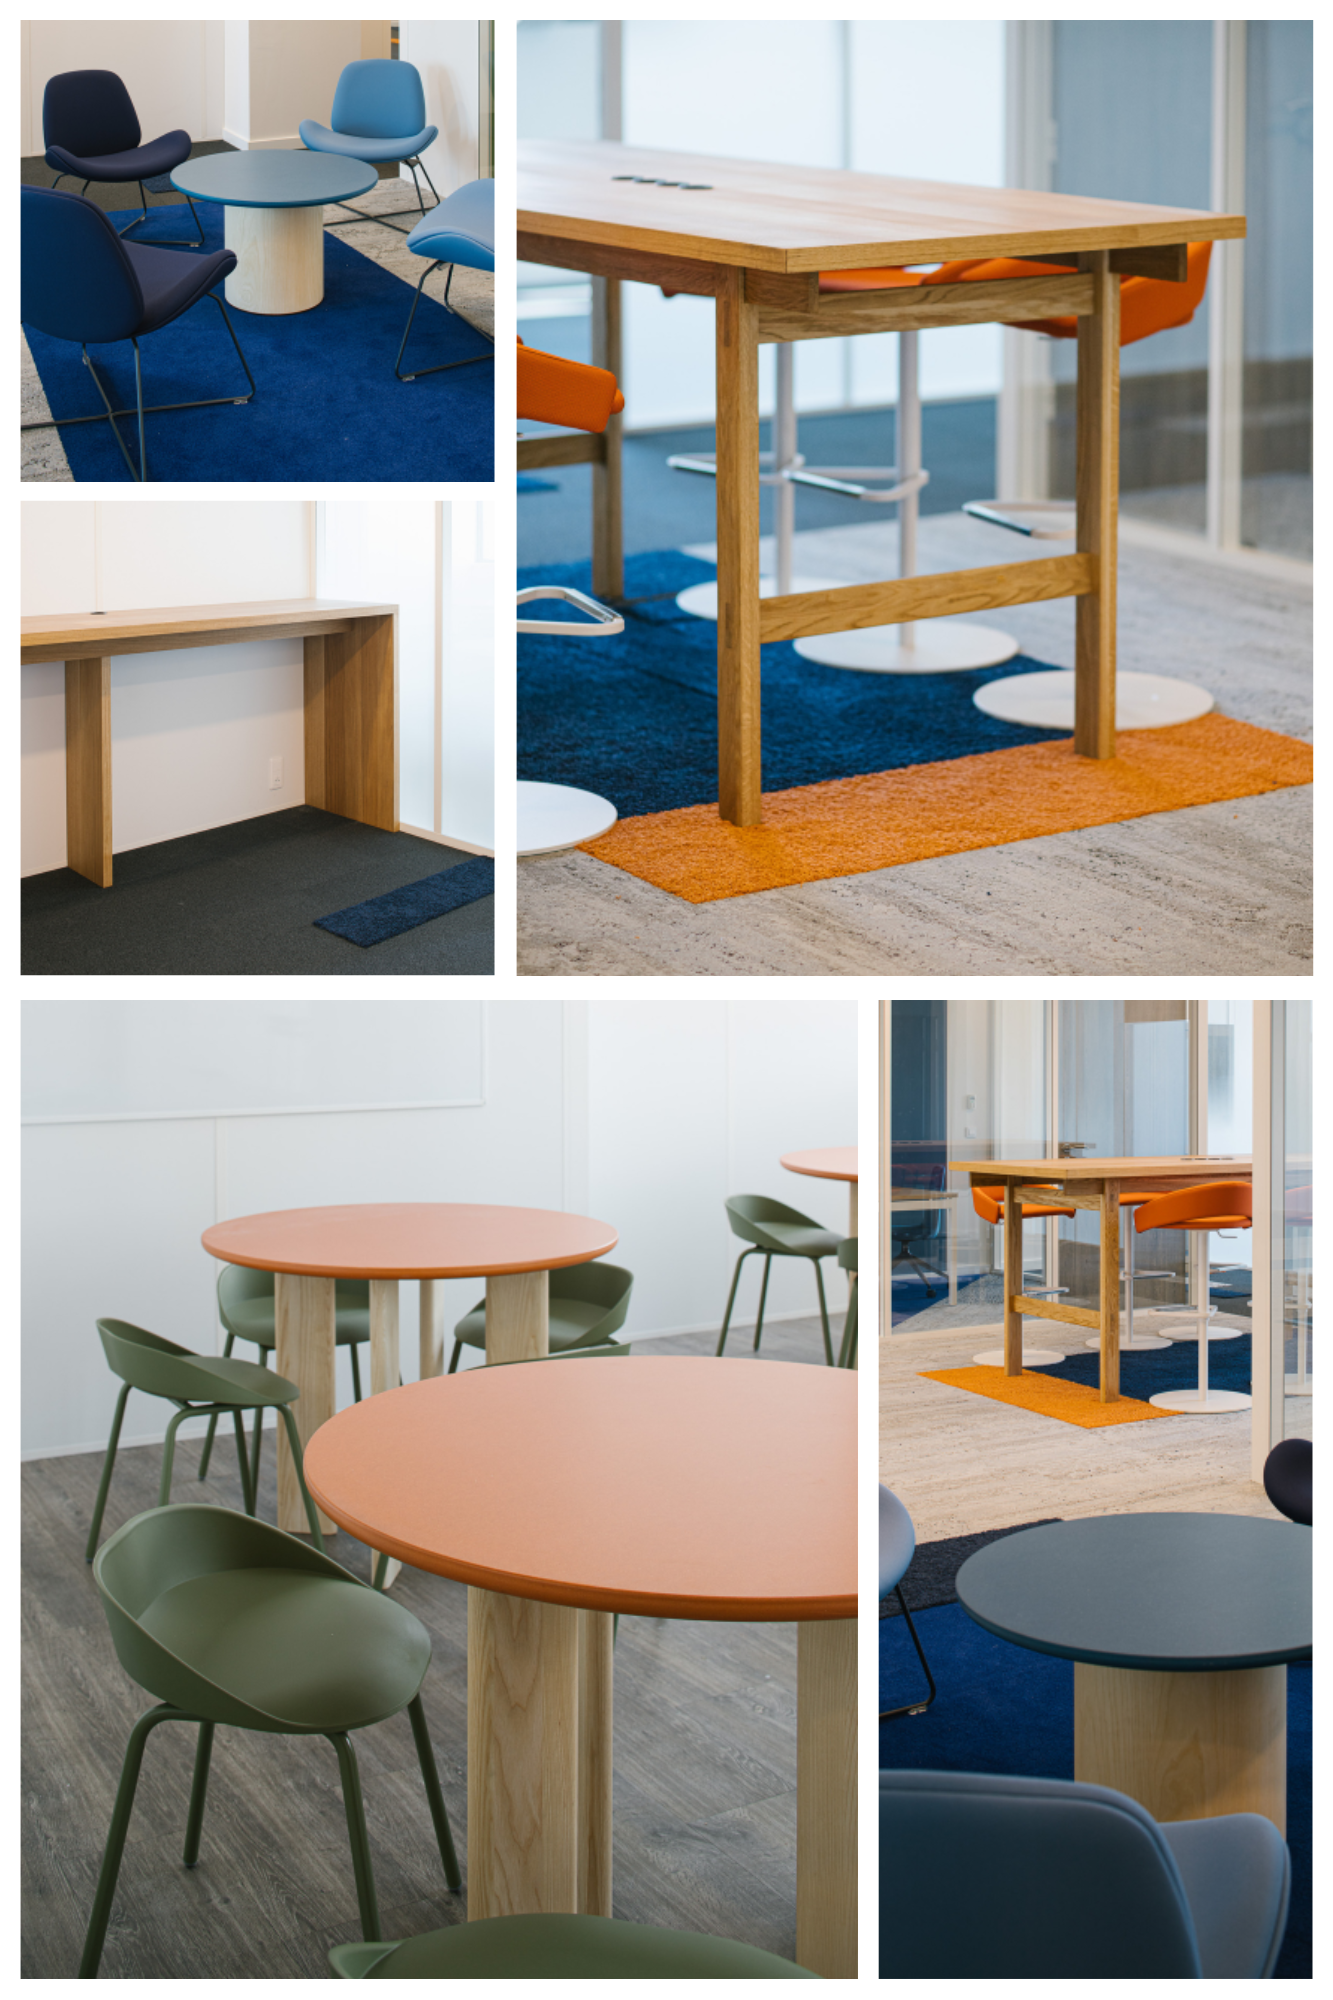 réalisation espace pro par Rinku Design création de mobiliers sur-mesure et agencement